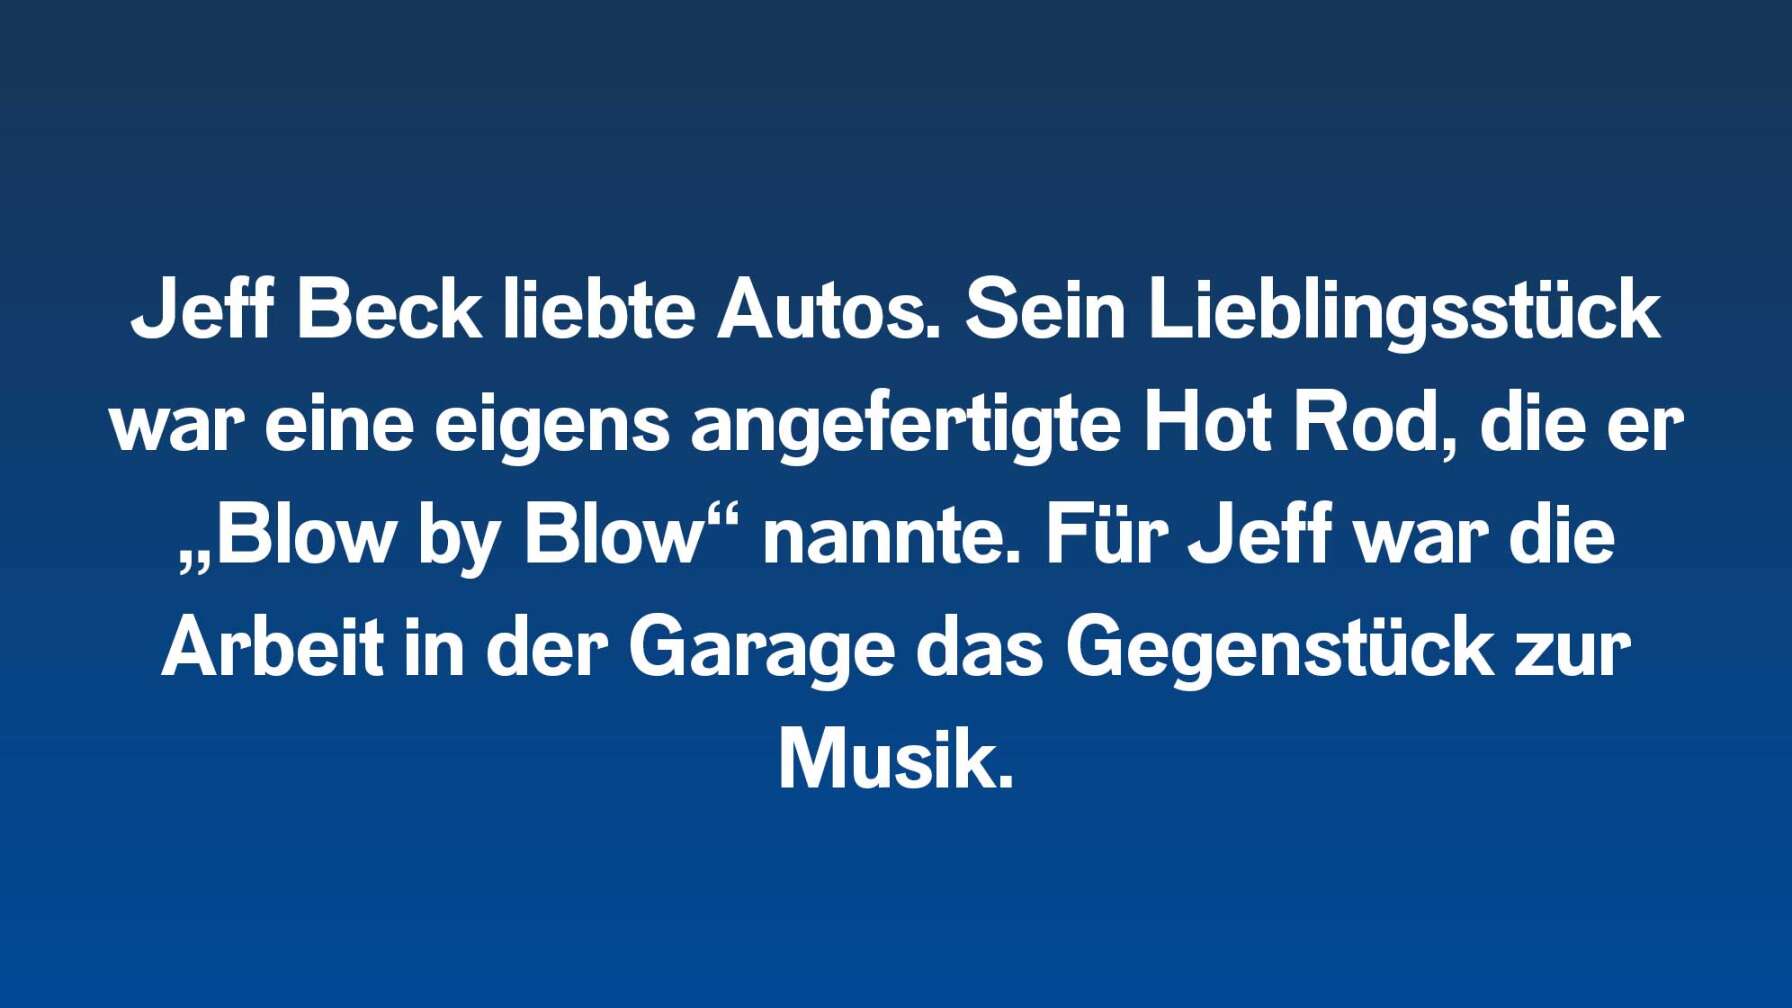 Jeff Beck liebte Autos. Sein Lieblingsstück war eine eigens angefertigte Hot Rod, die er „Blow by Blow“ nannte. Für Jeff war die Arbeit in der Garage das Gegenstück zur Musik.